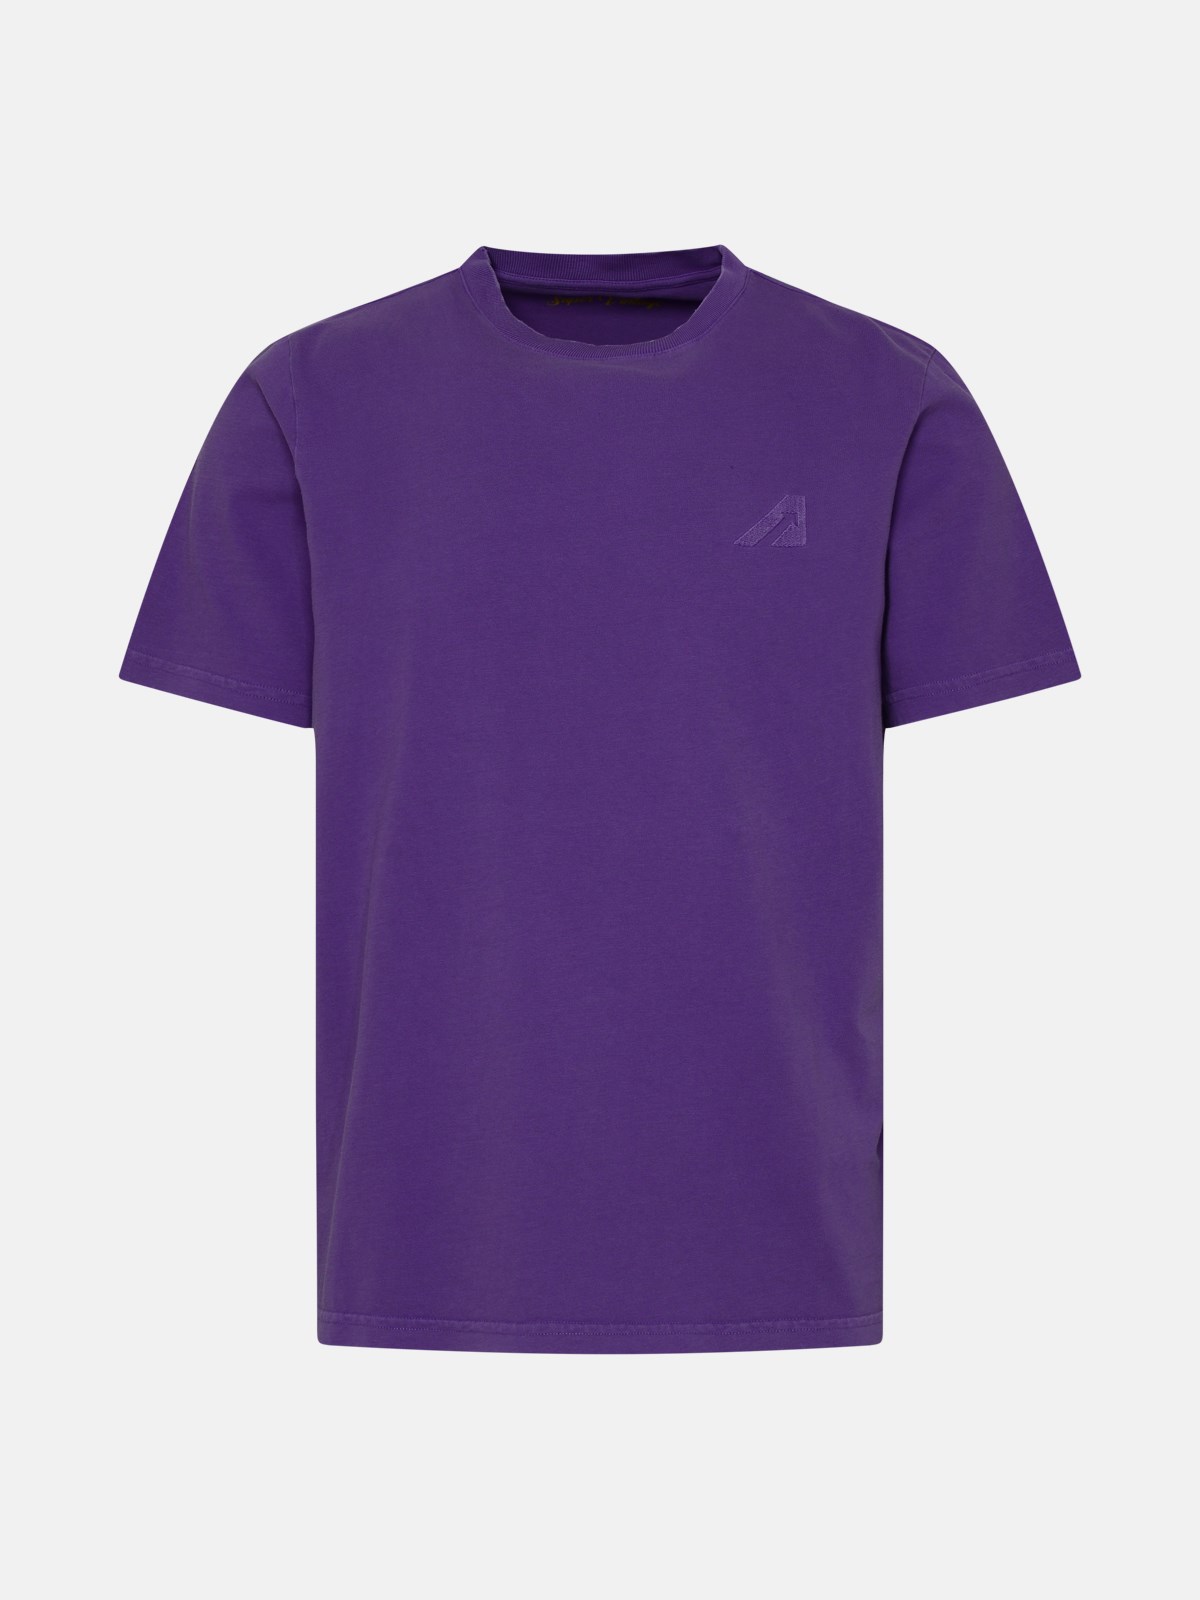 Autry Kids' Purple Cotton T-shirt In Violet